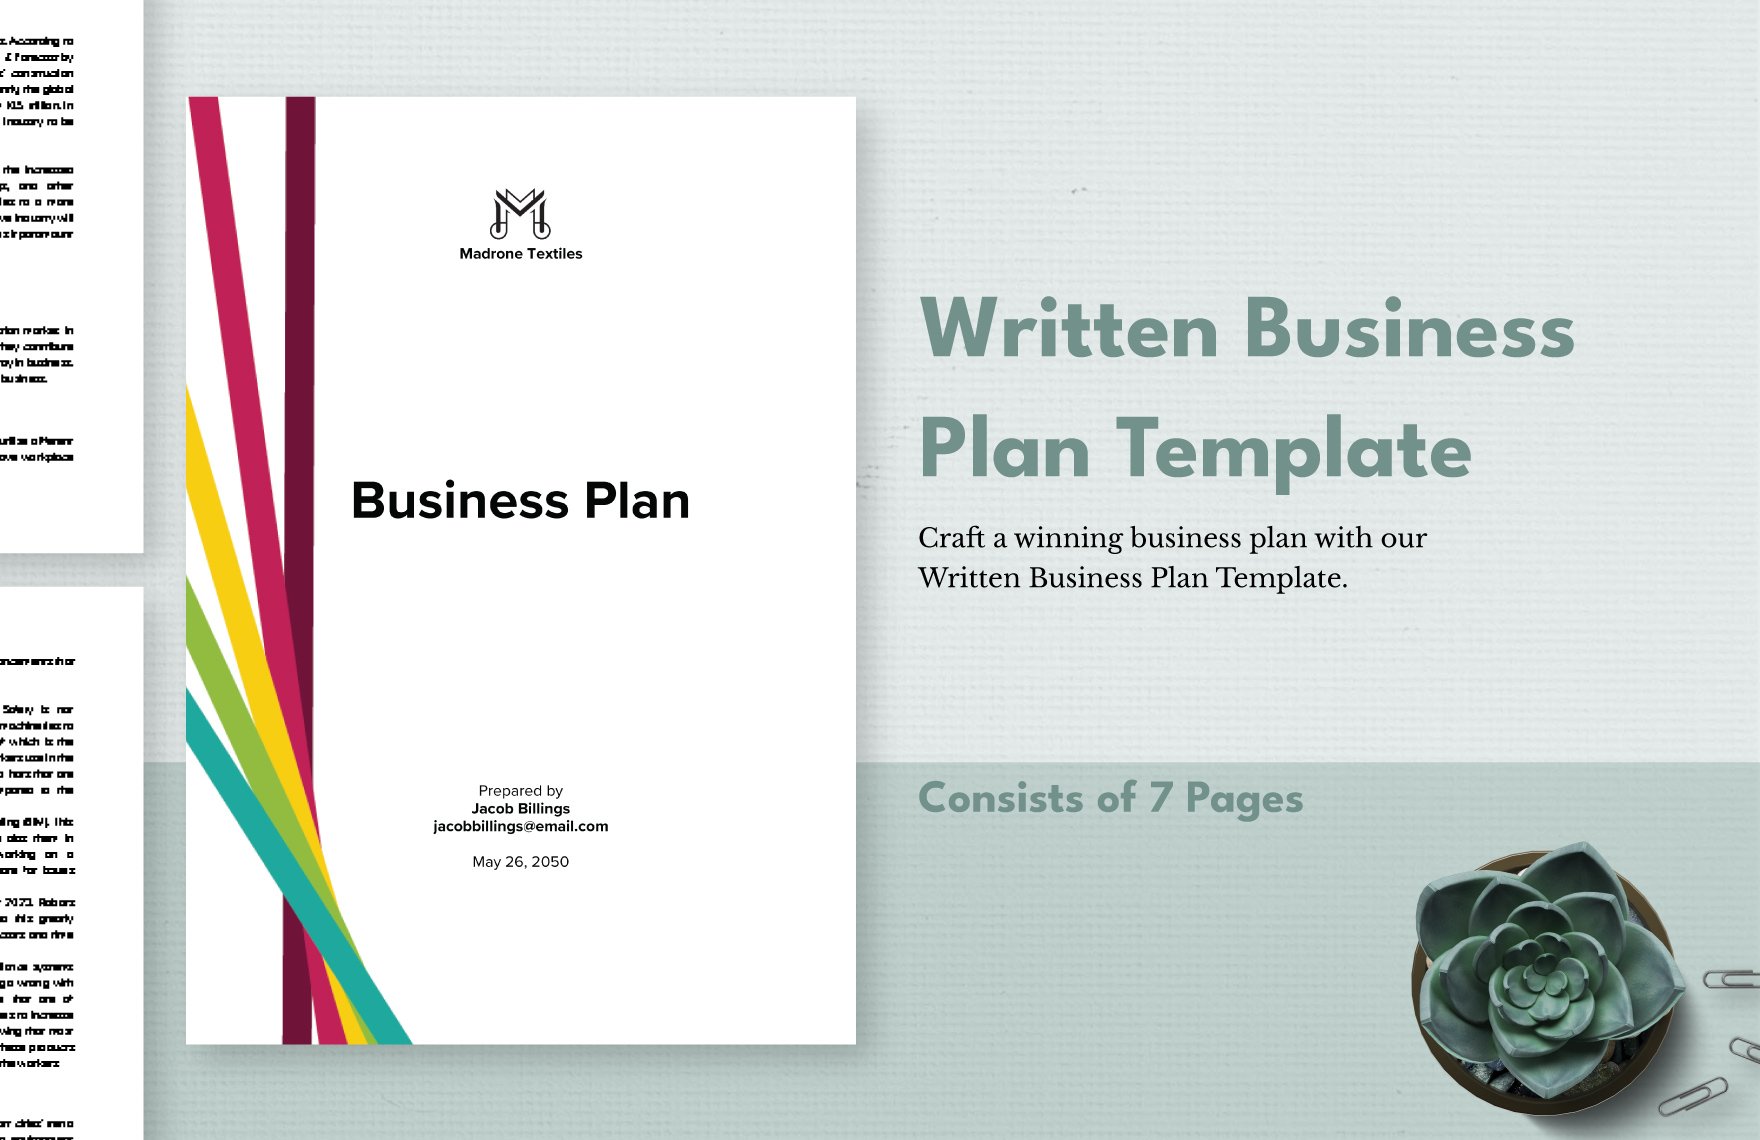 Written Business Plan Template